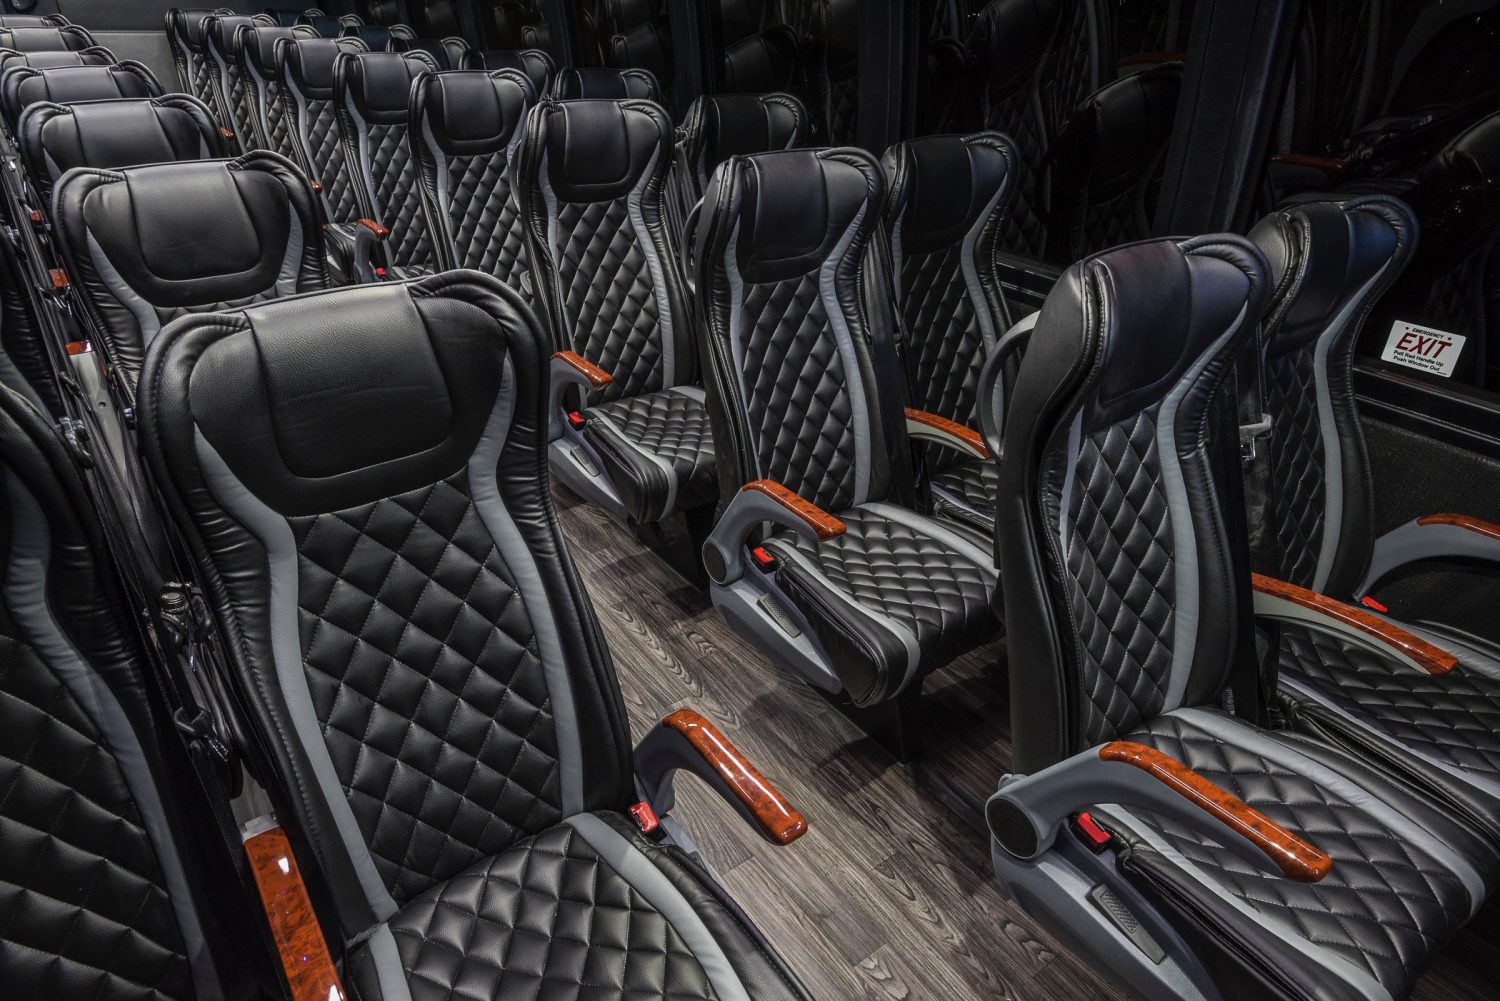 mercedes luxury bus interior